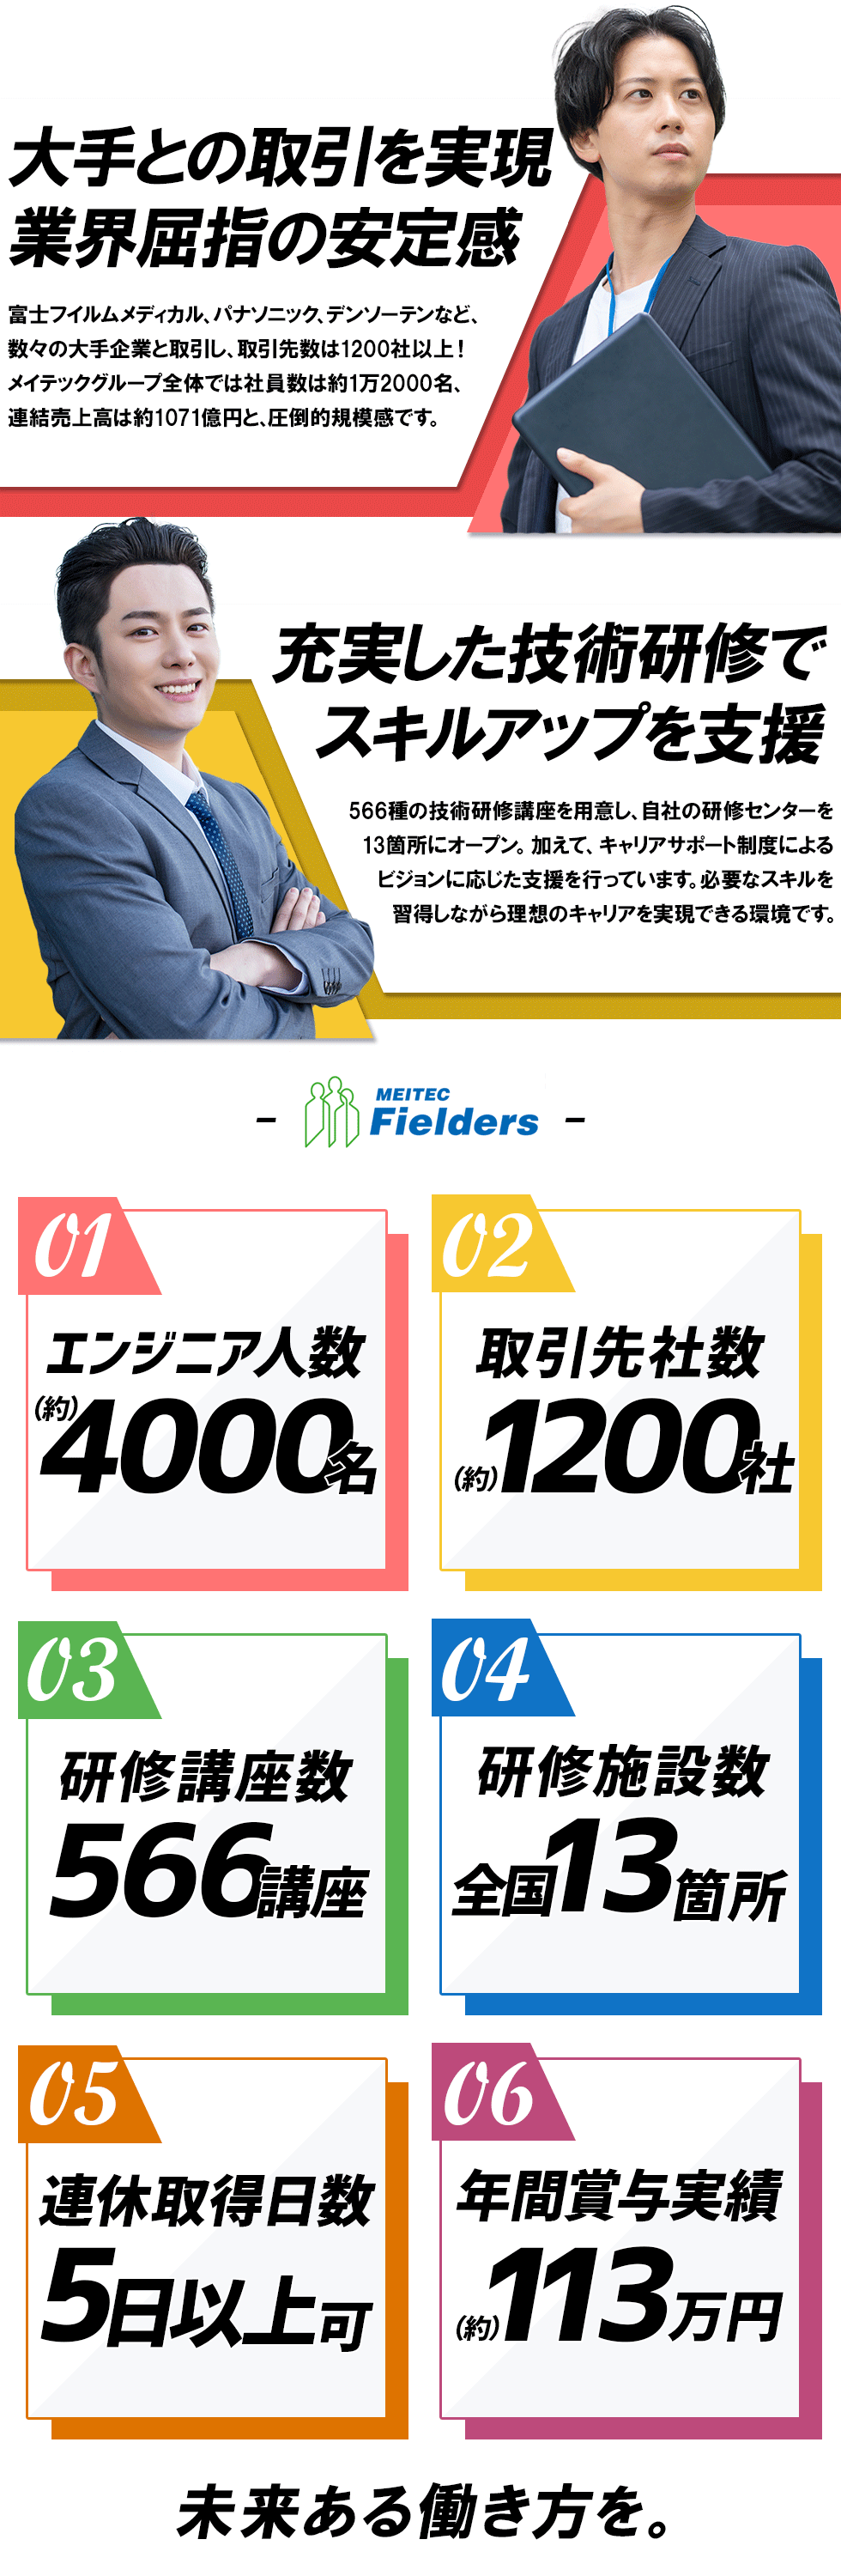 株式会社メイテックフィルダーズ【東証プライム上場グループ】